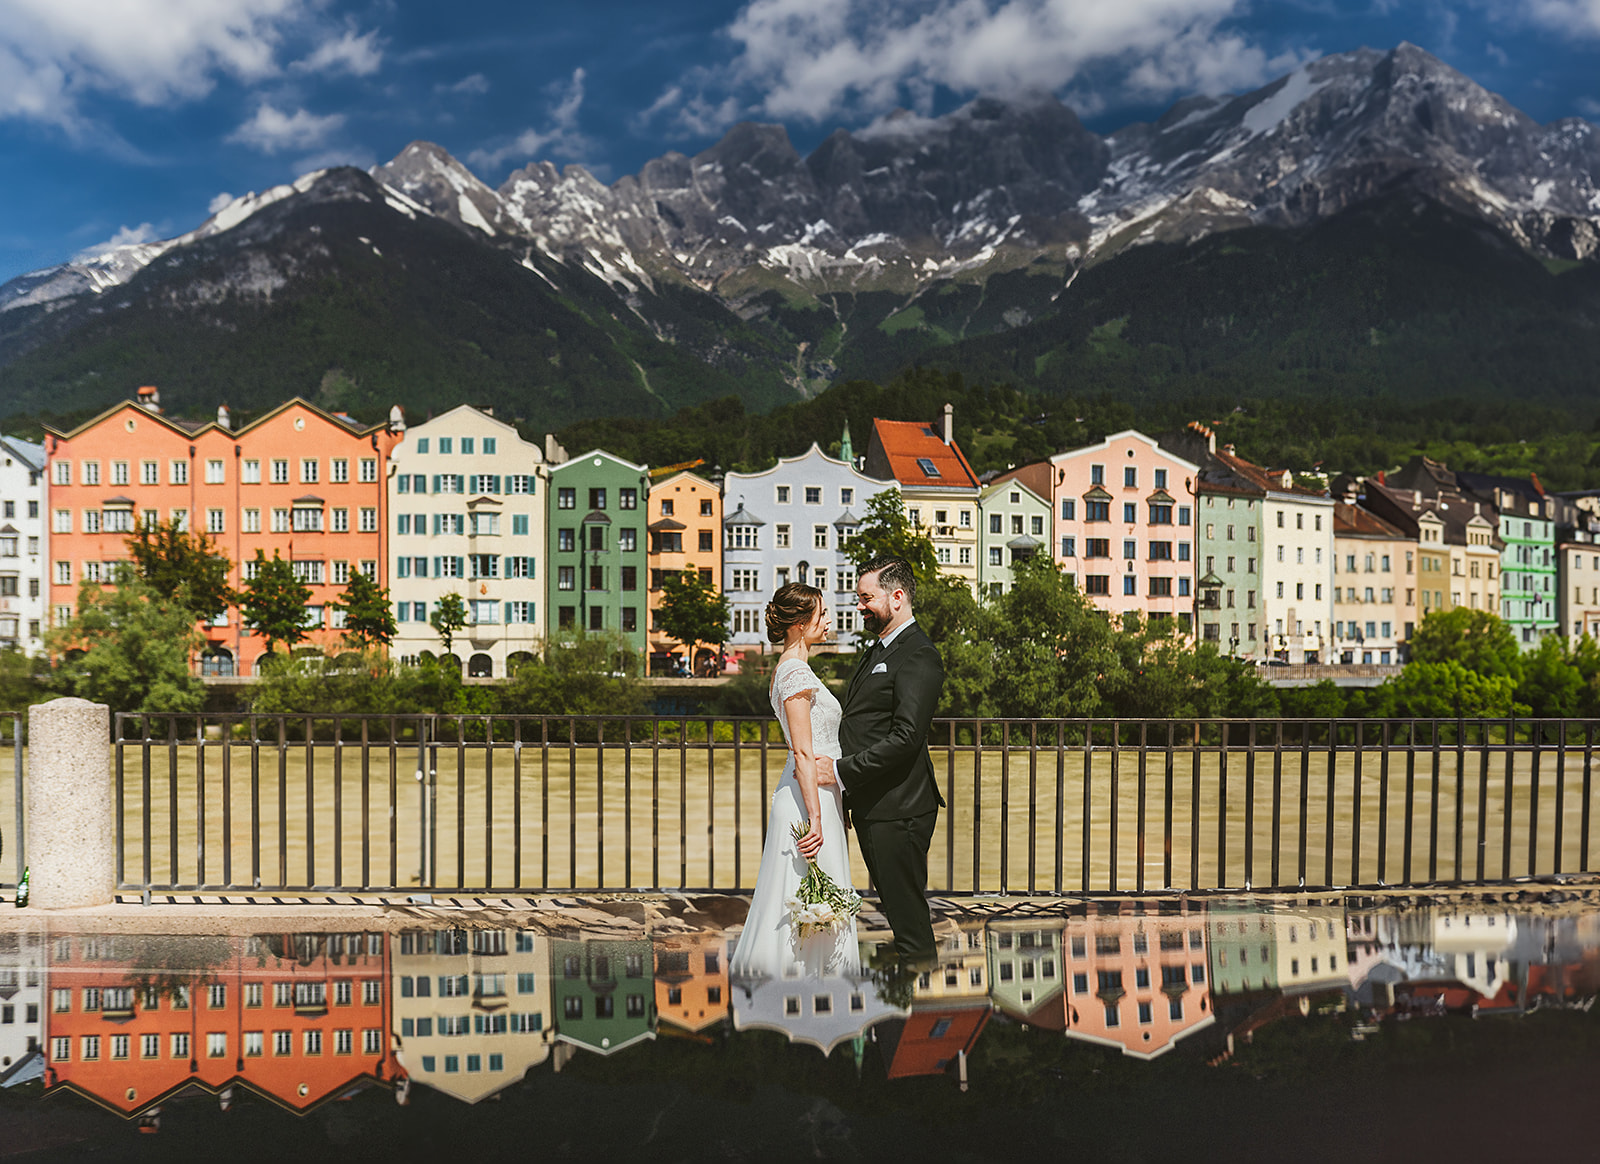 Ein Brautpaar vor den bunten Häusern von Mariahilf und der Nordkette in Innsbruck